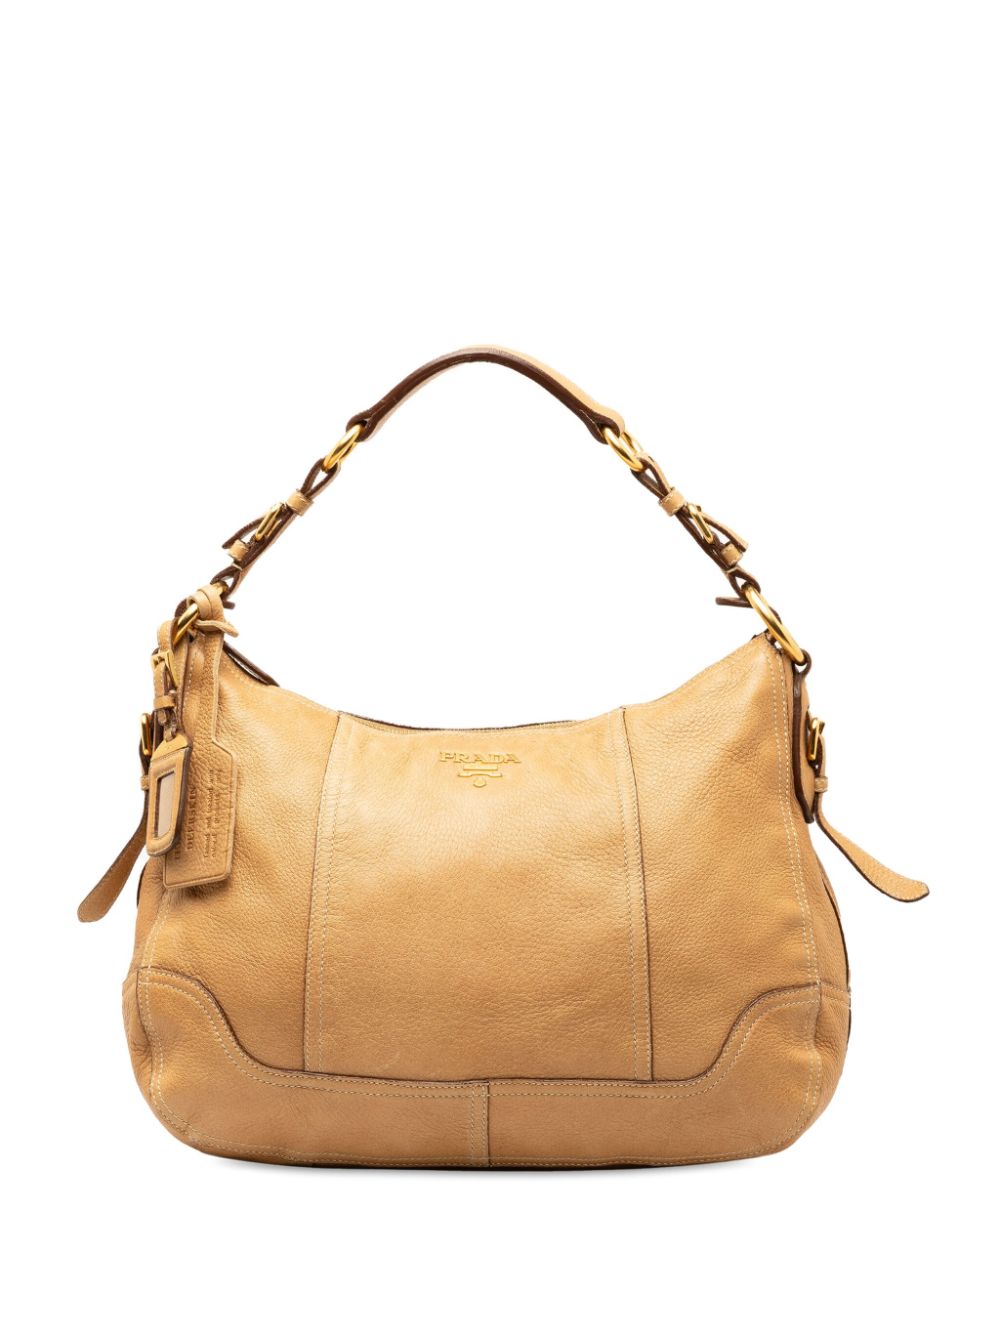 Pre-owned Prada 2000-2013 Deerskin Leather Shoulder Bag In Brown